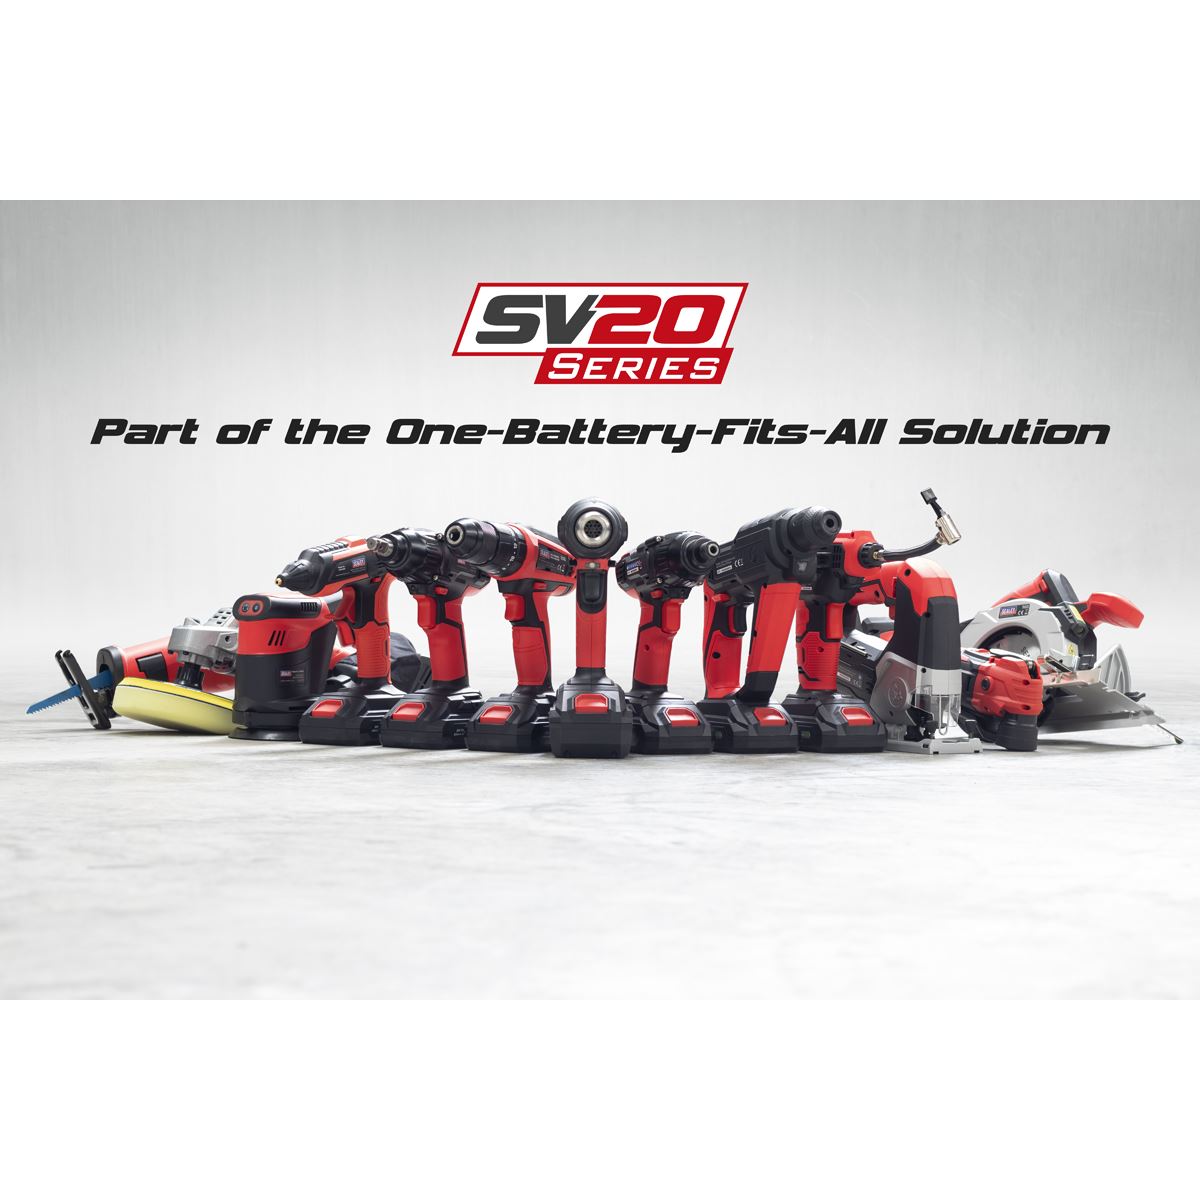 Sealey Brushless Cordless Nut Riveter 20V SV20 Series - 2 Batteries